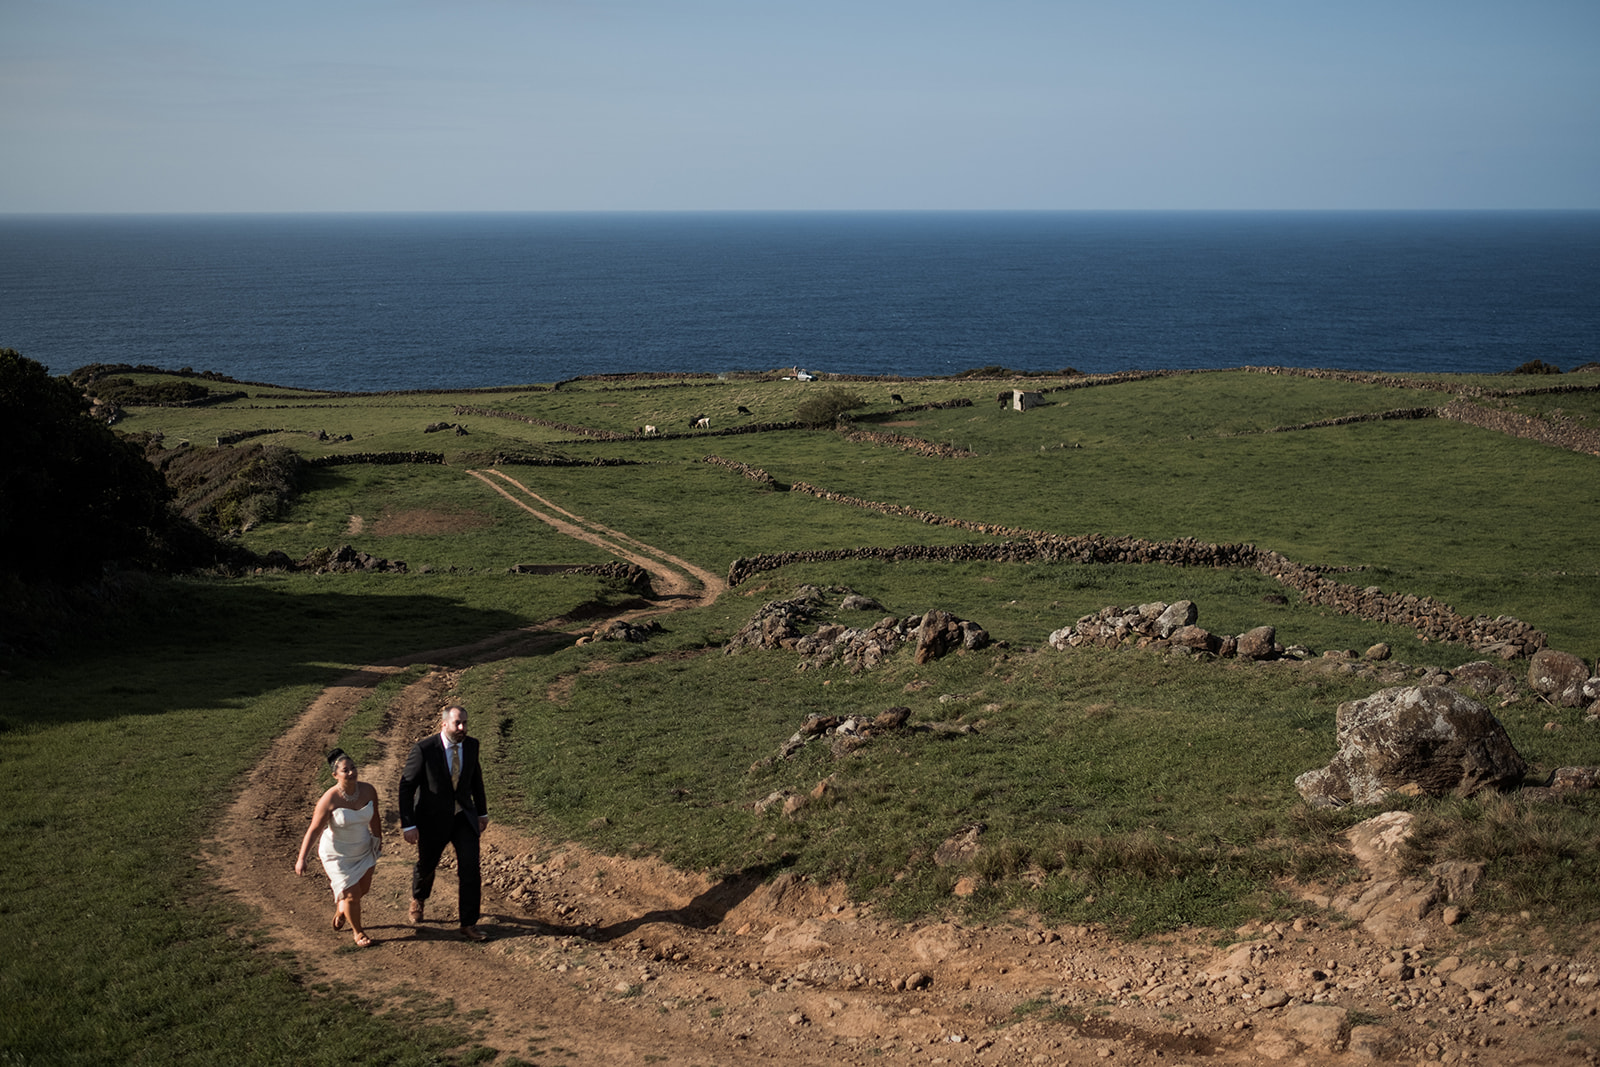 Azores picturesque wedding scenery